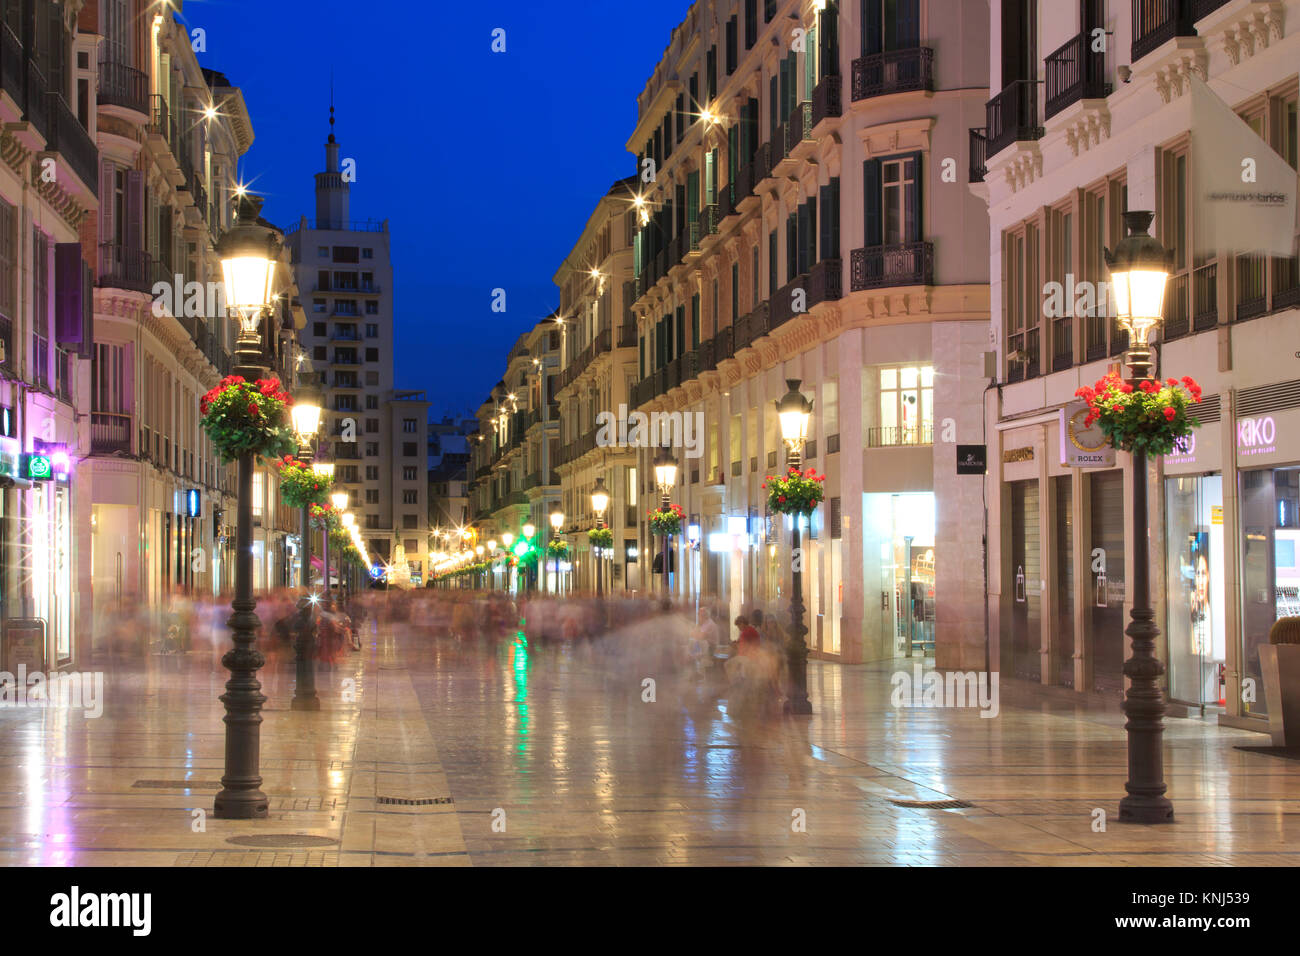 Calle Larios au crépuscule dans la région de Malaga sur la Costa del Sol en Espagne Banque D'Images